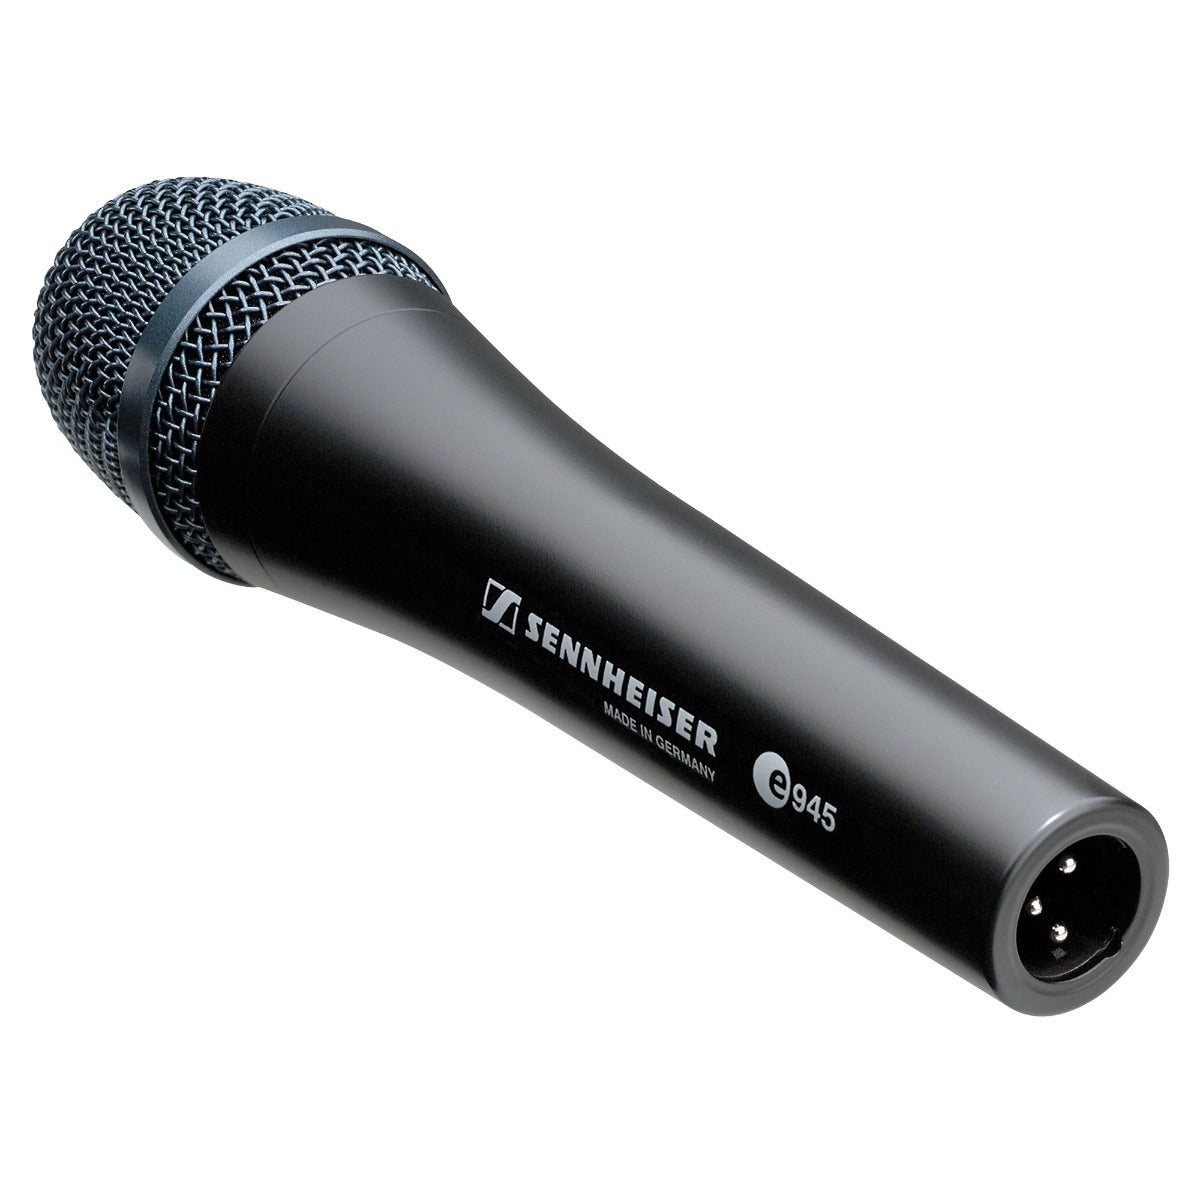 Sennheiser e 945 Dynamic Vocal Microphone